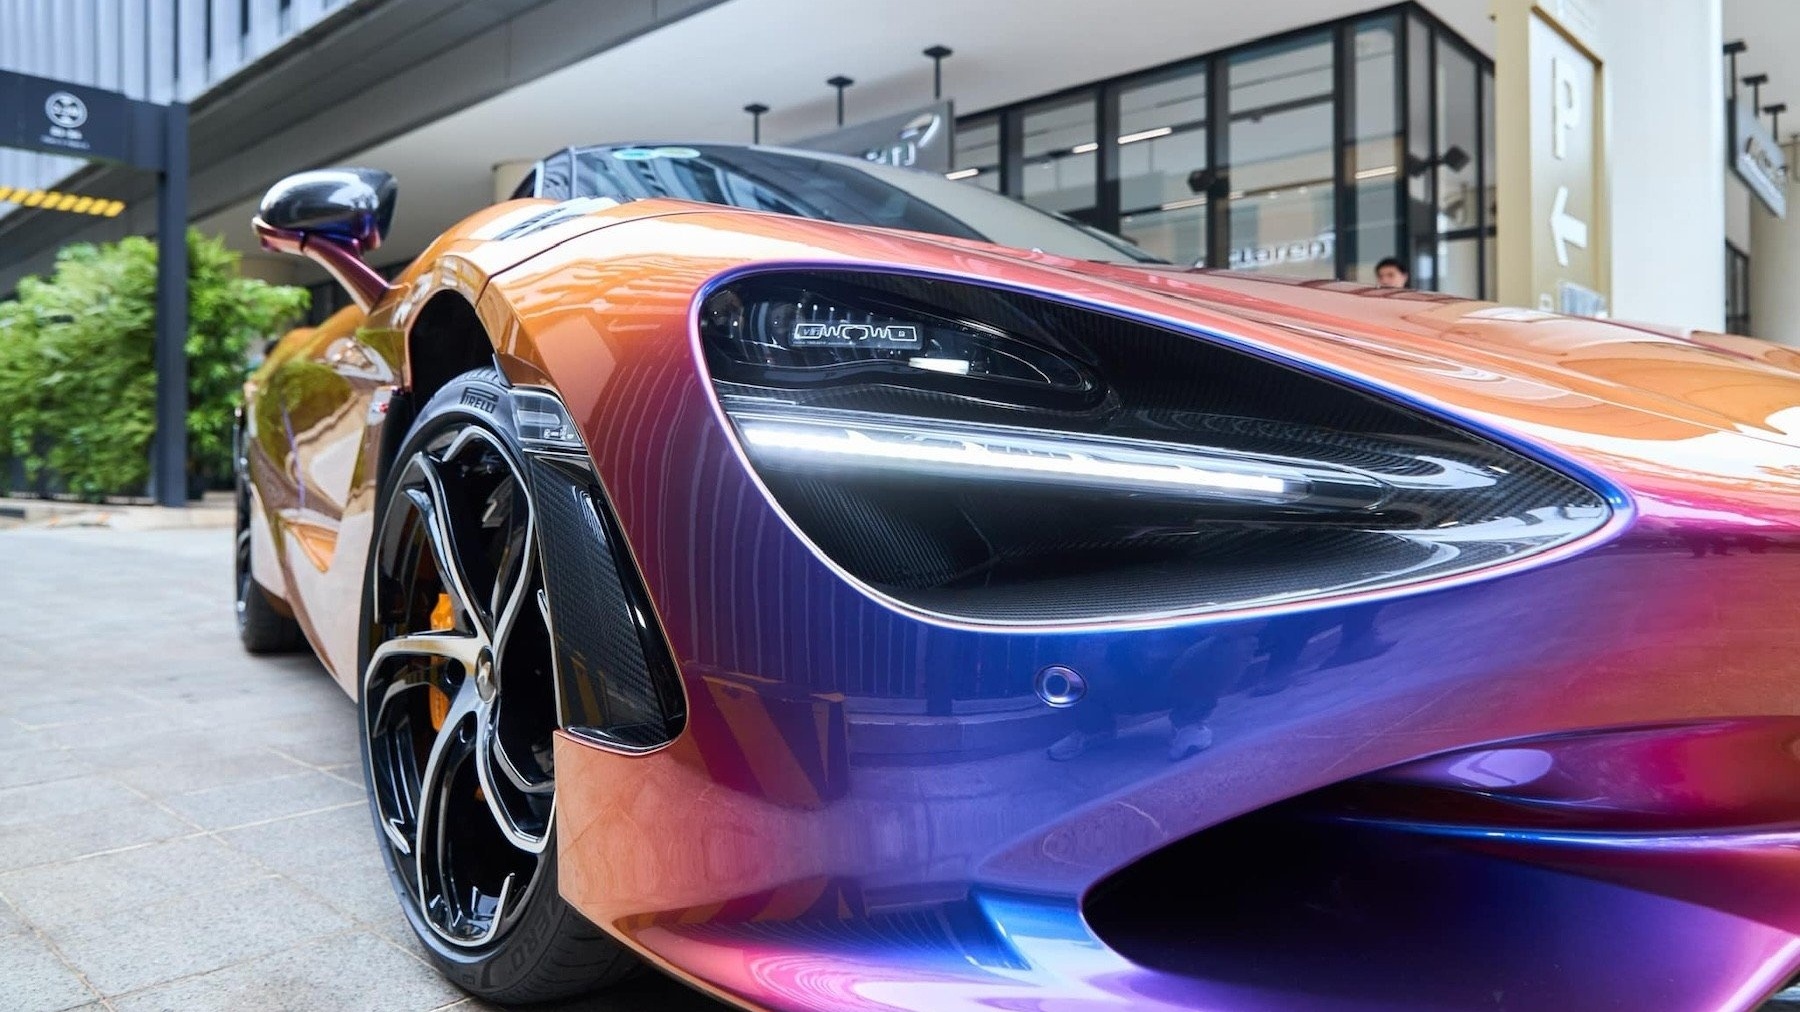 Đại gia tiền số tậu siêu xe McLaren 750S Coupe, riêng biển số tứ quý đã hơn 1,5 tỷ đồng